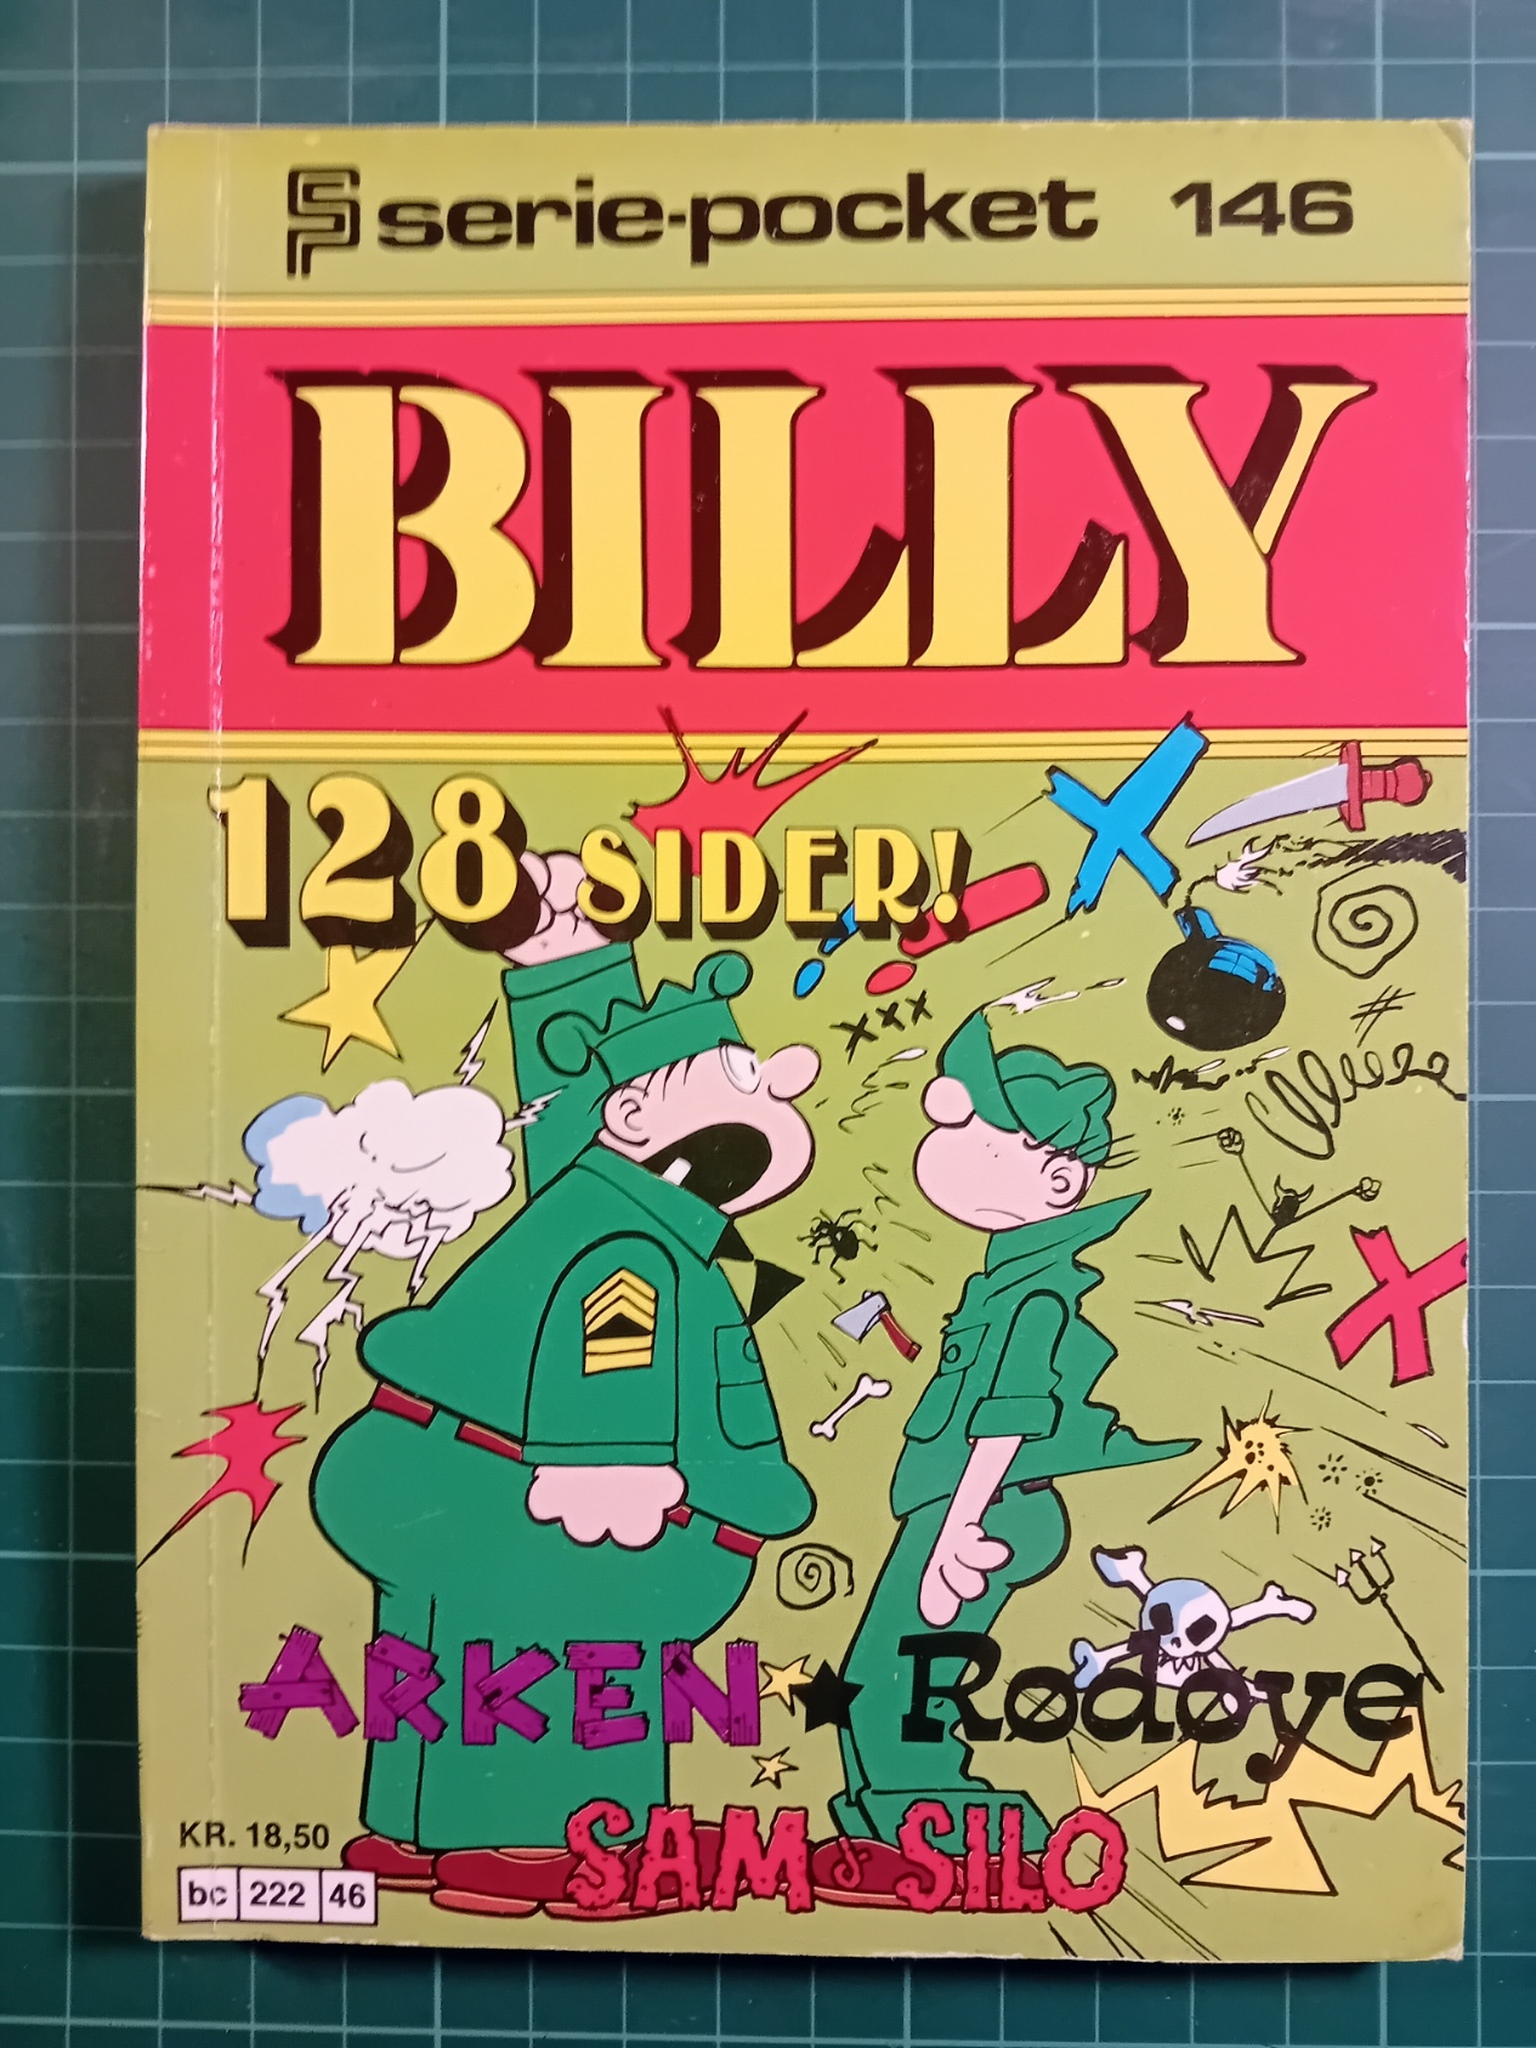 Serie-pocket 146 : Billy